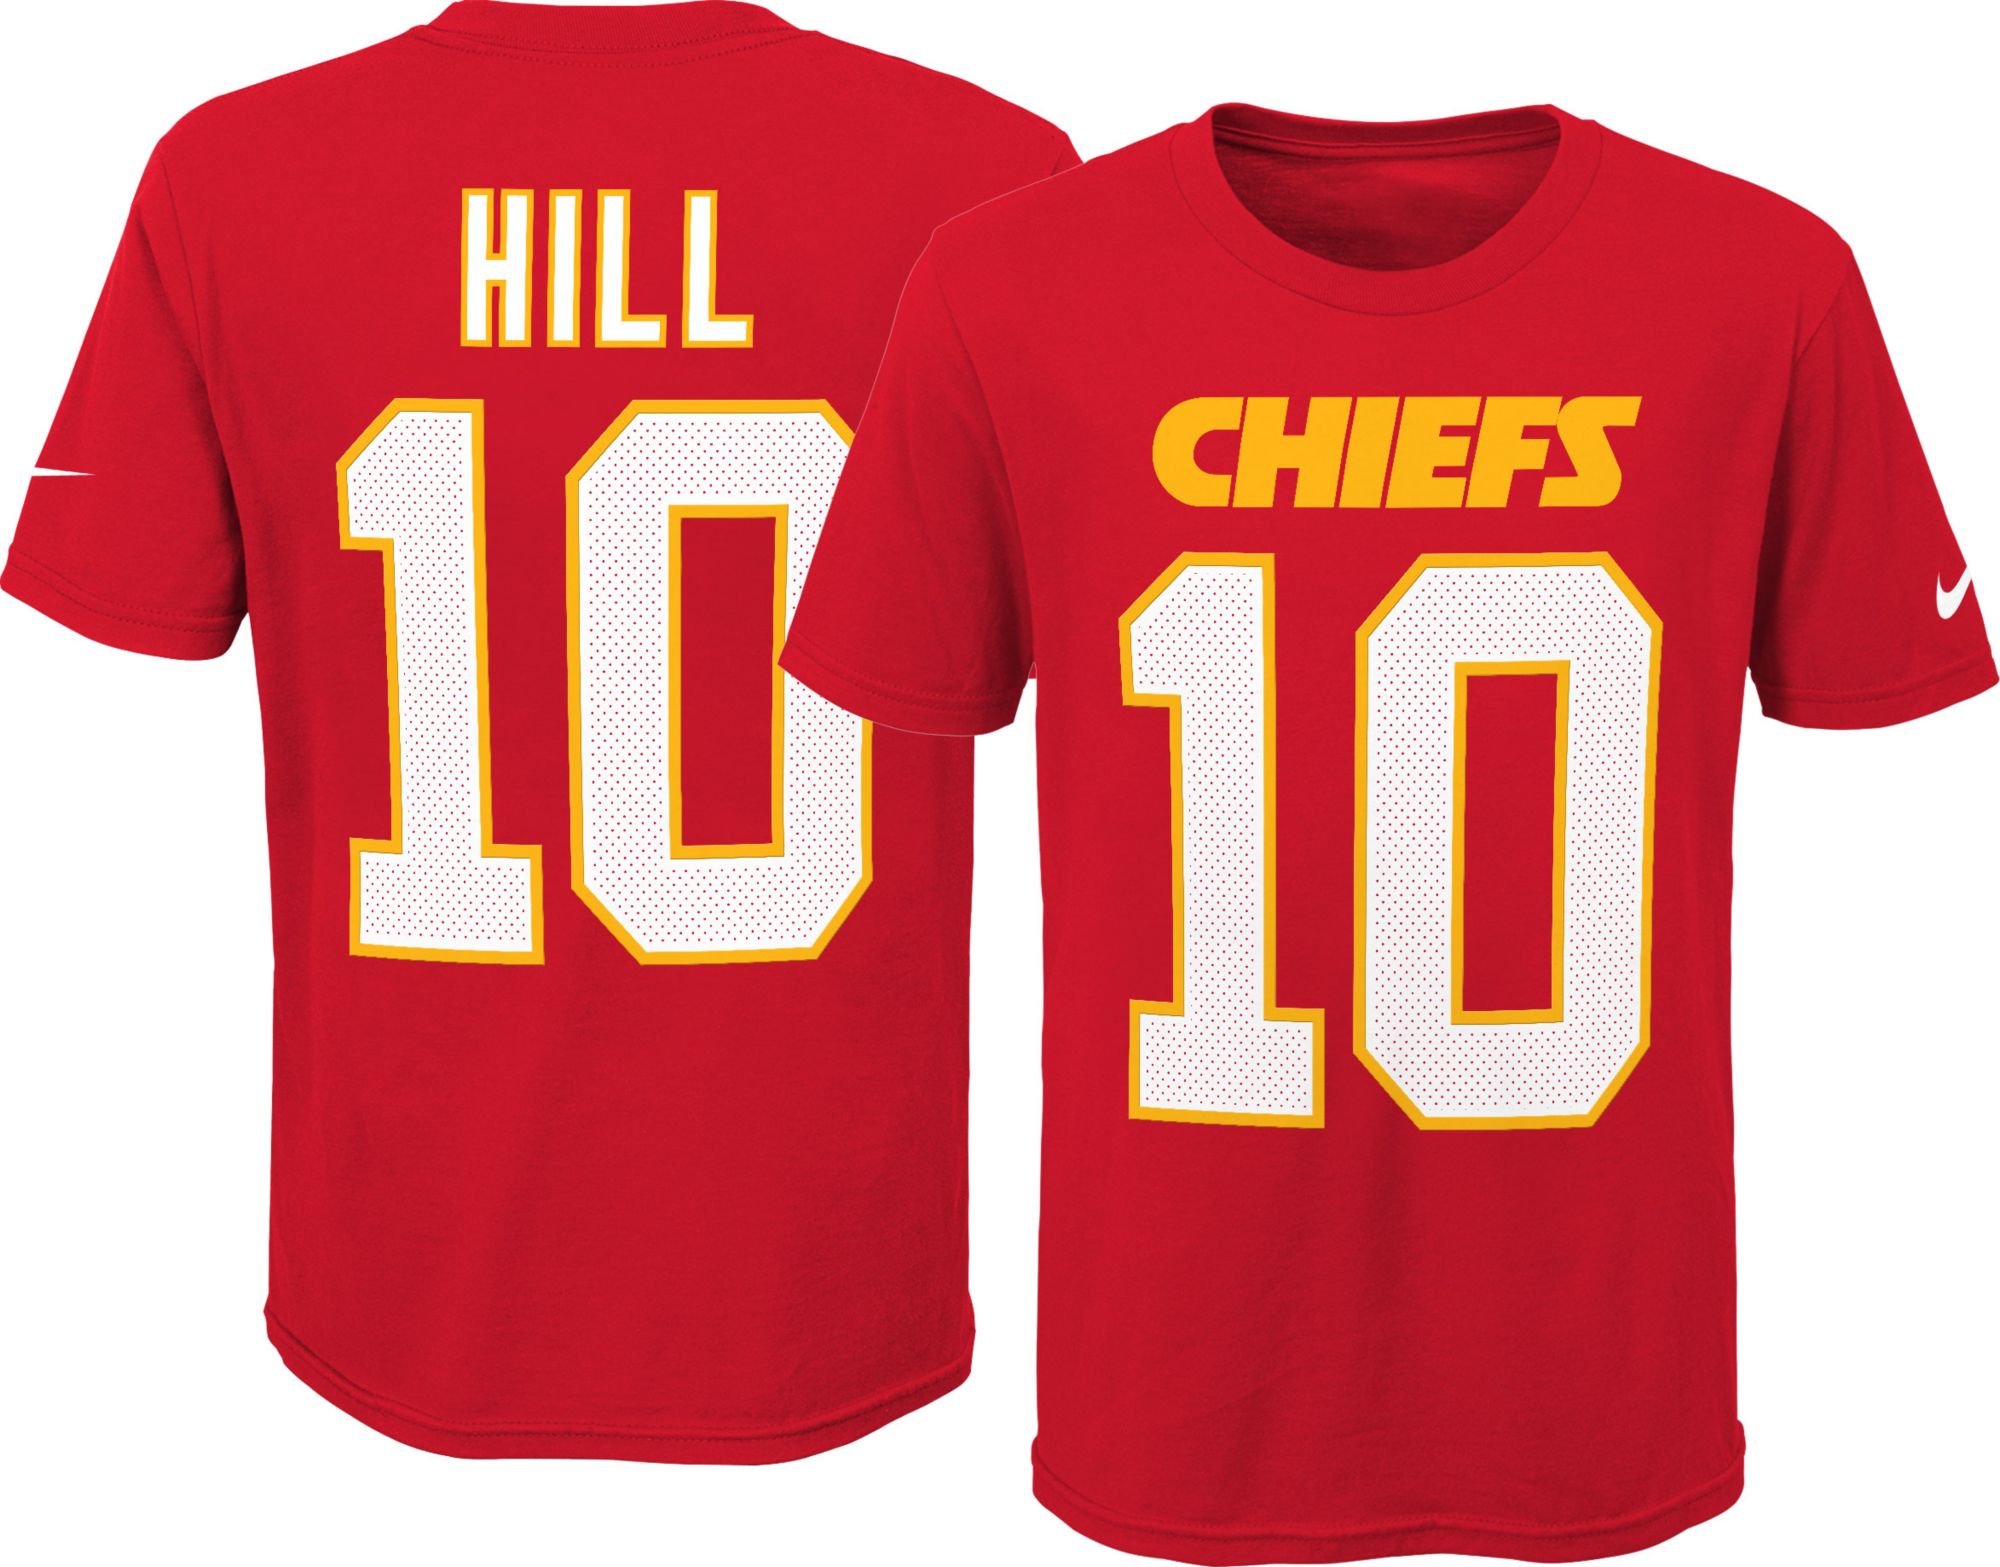 hill chiefs jersey